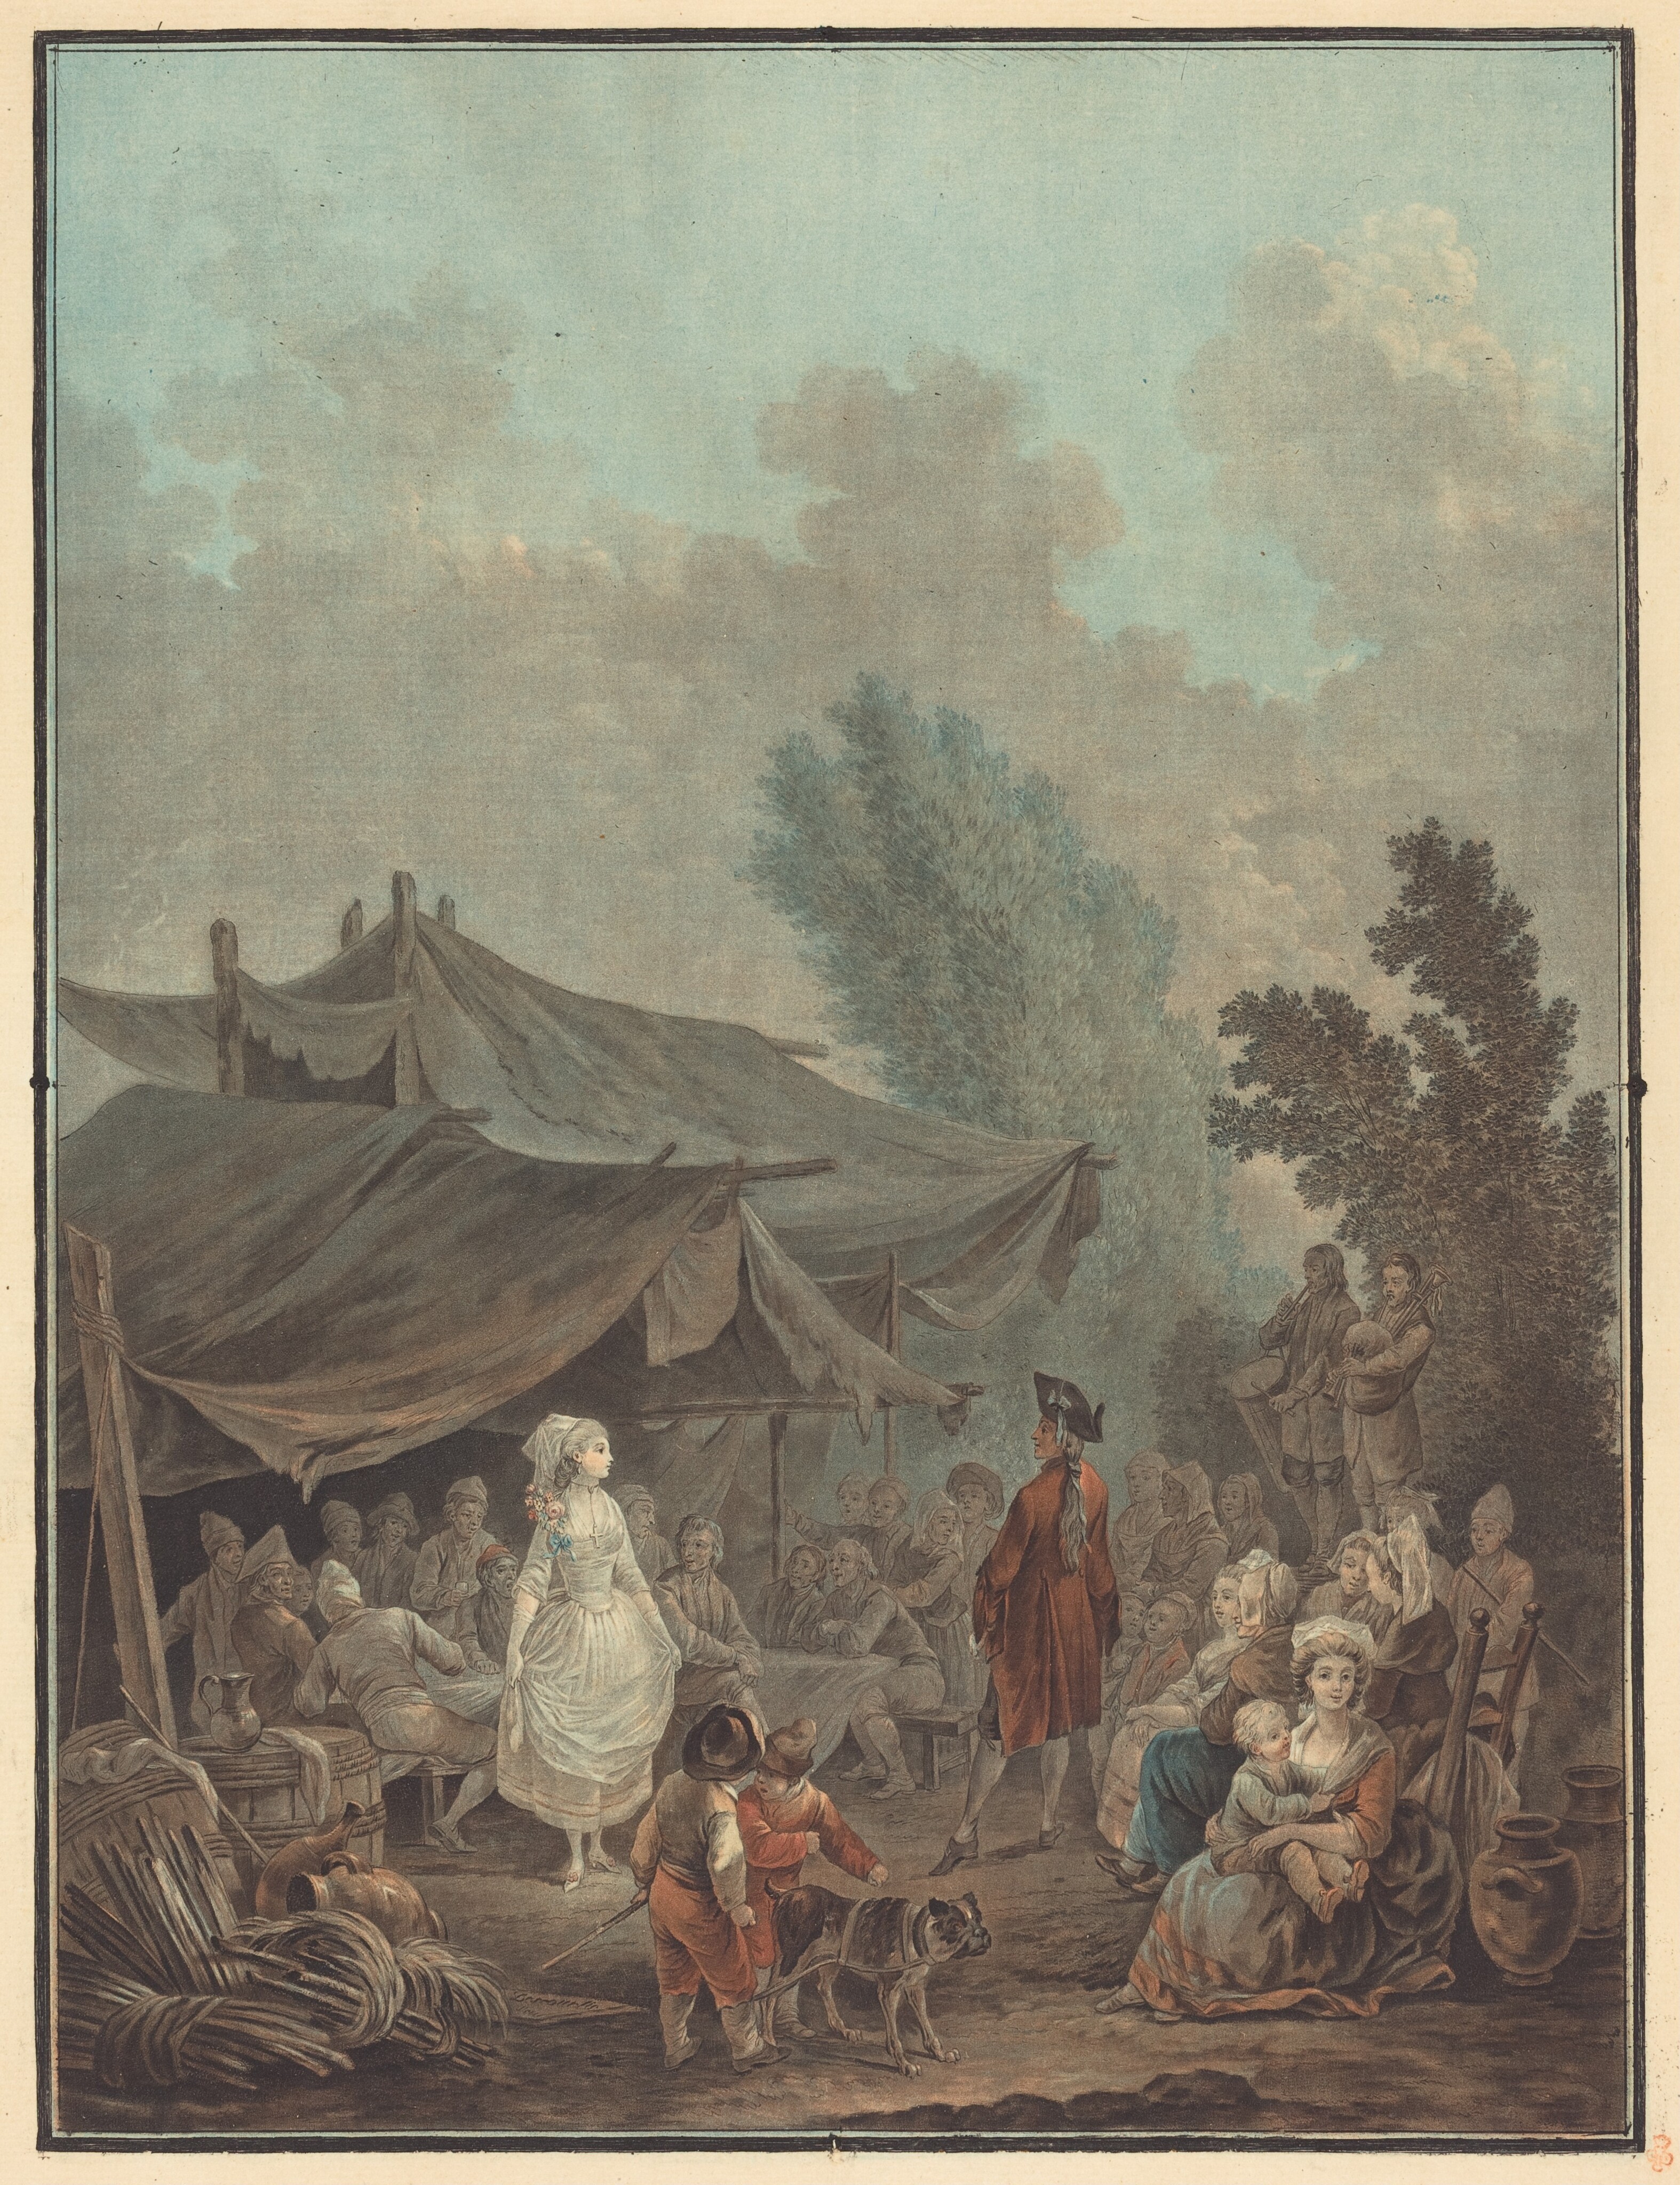 Noce de Village (Village Wedding), by Charles-Melchior Descourtis, 1785